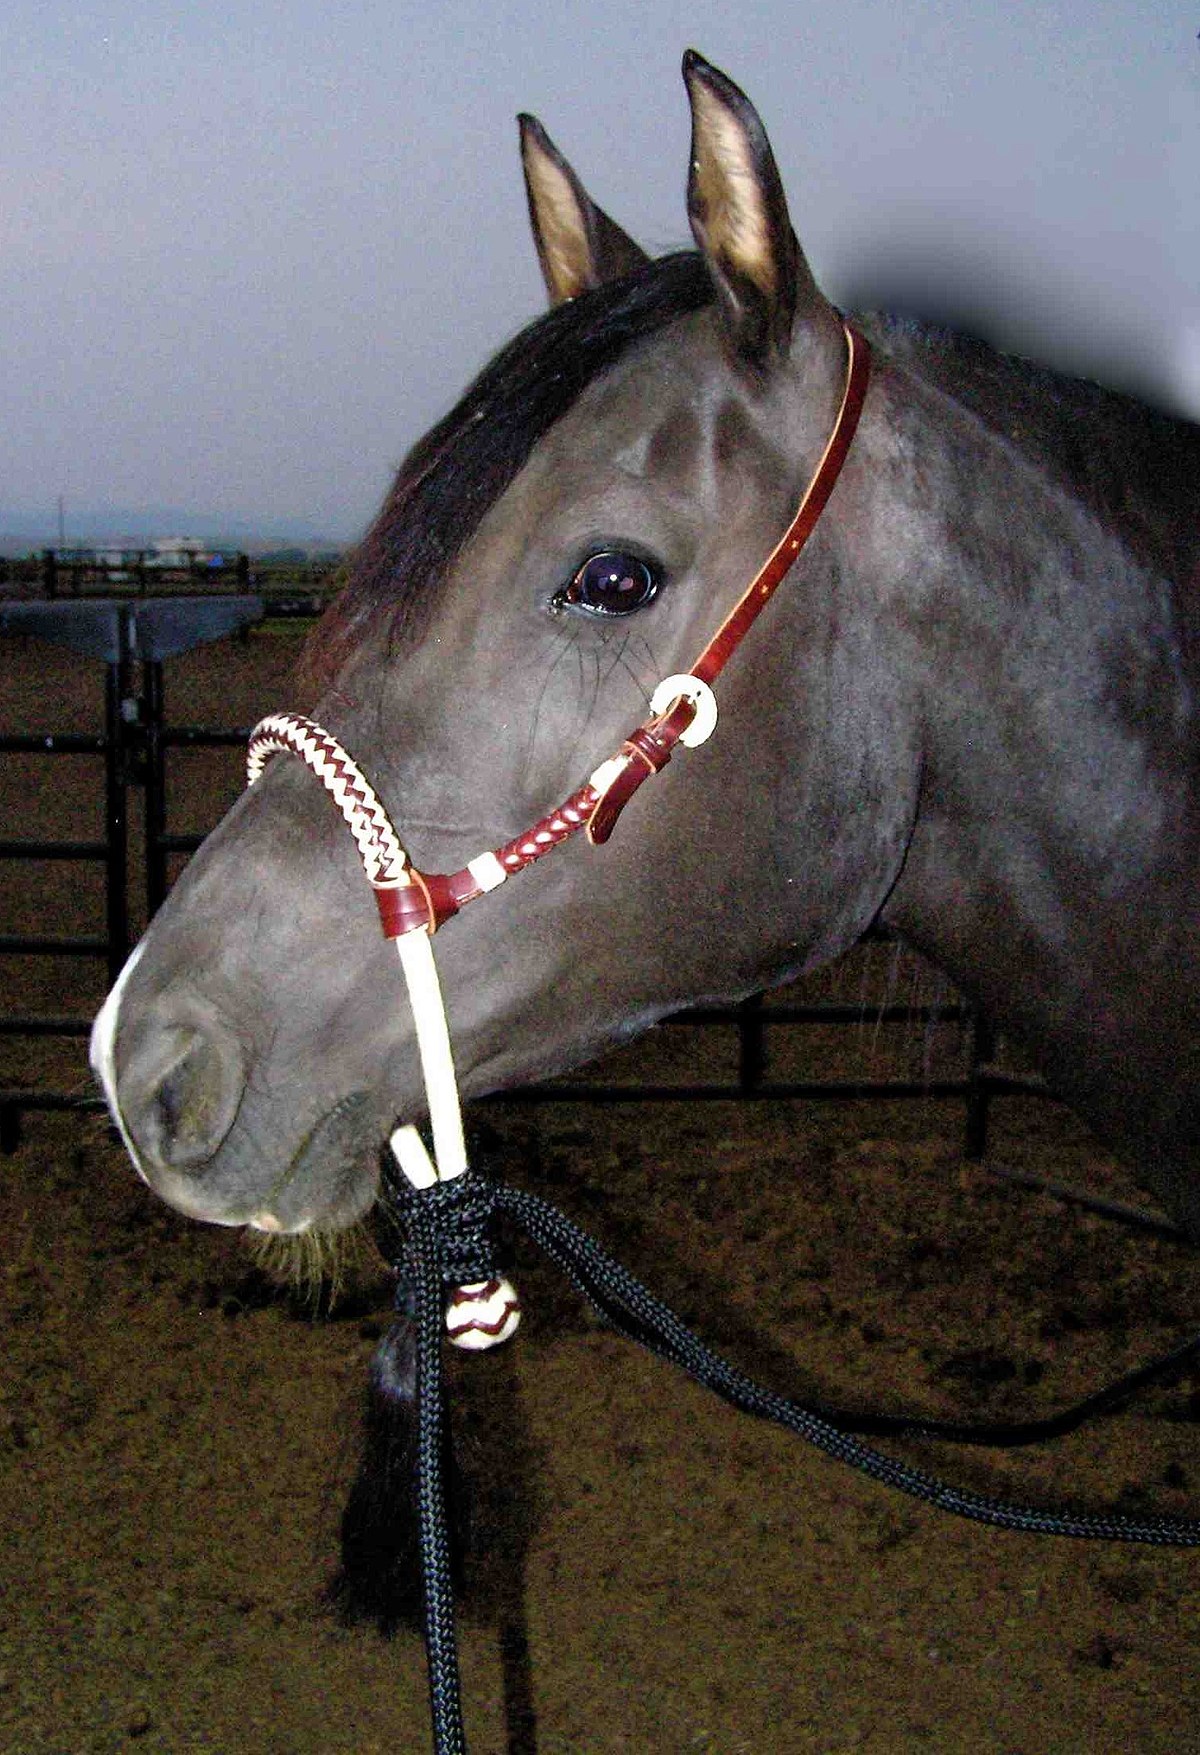 Iluminar En Escarchado Bozal (equitación) - Wikipedia, la enciclopedia libre